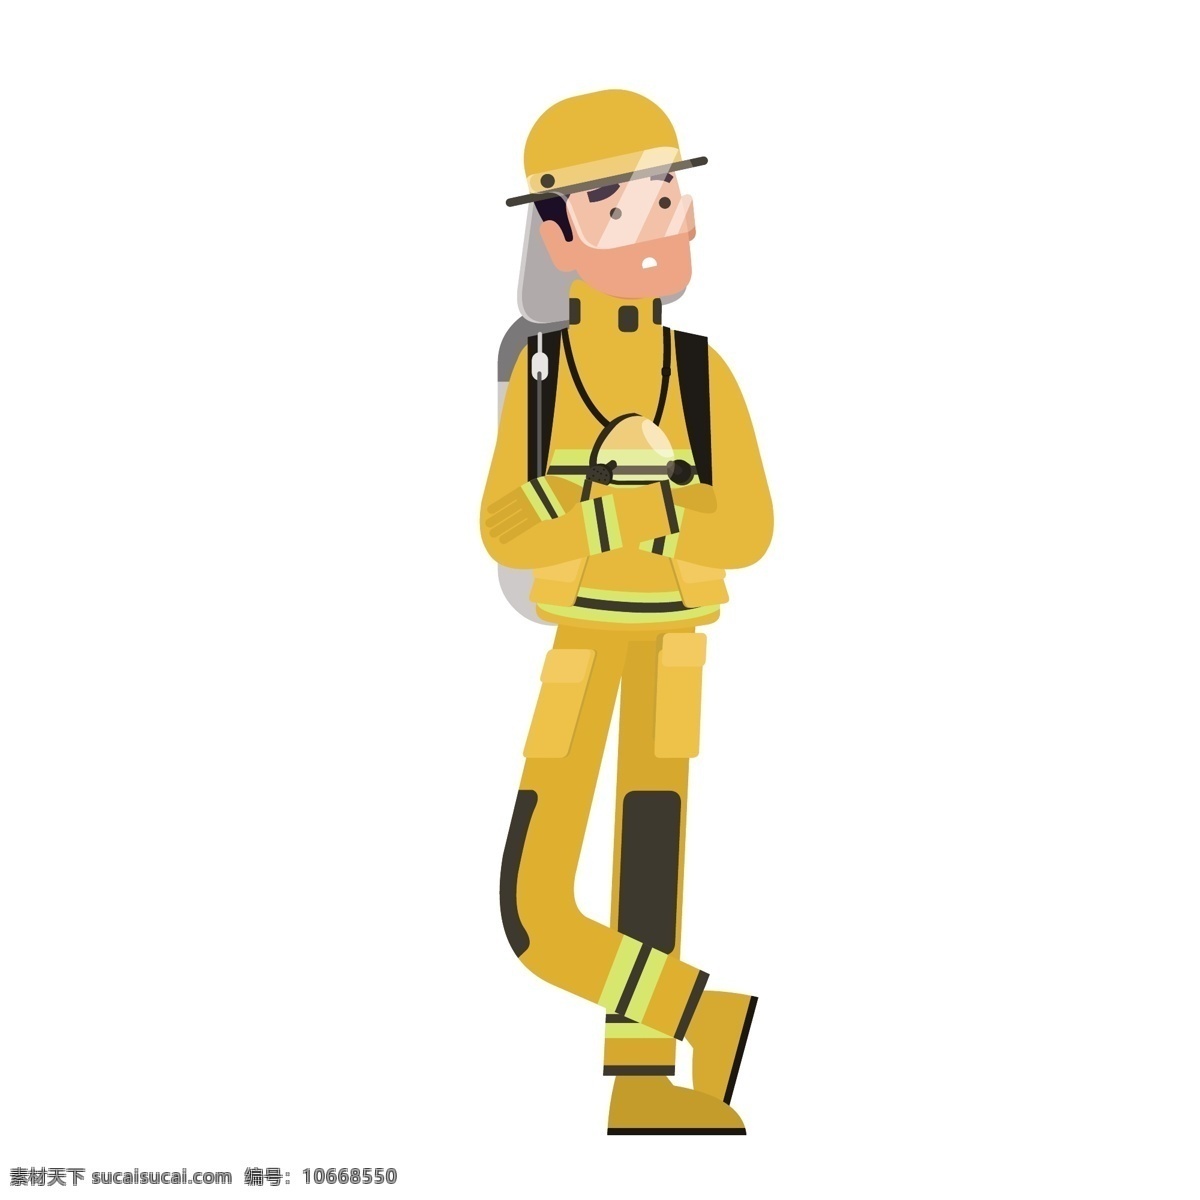 卡通 消防员 矢量 姿势 站姿 卡通的 卡通的消防员 黄色 黄色制服 救火员 卡通救火员 安全救援队